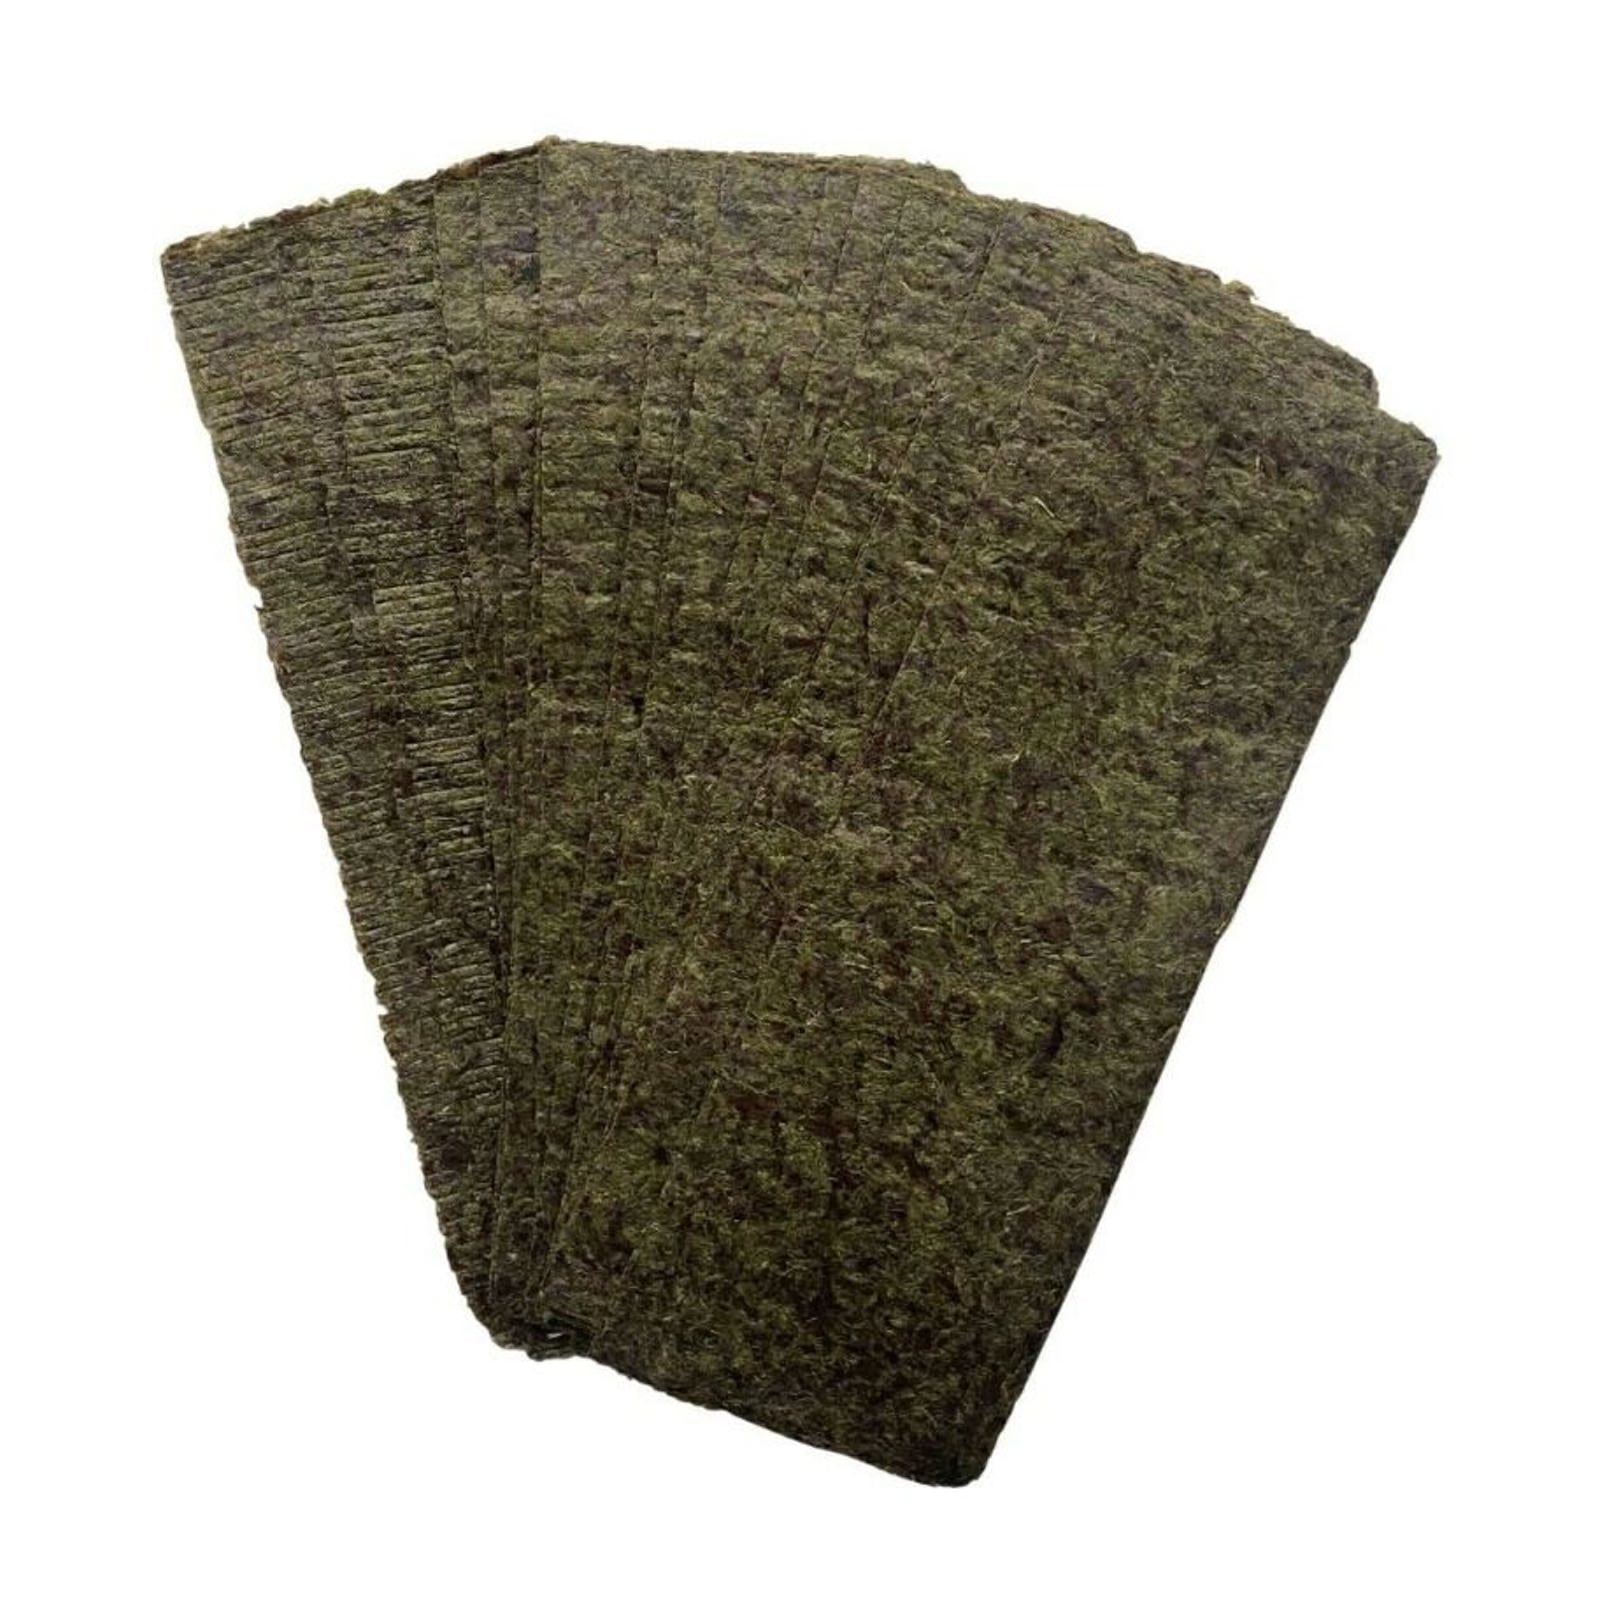 Dried Seaweed Sheets